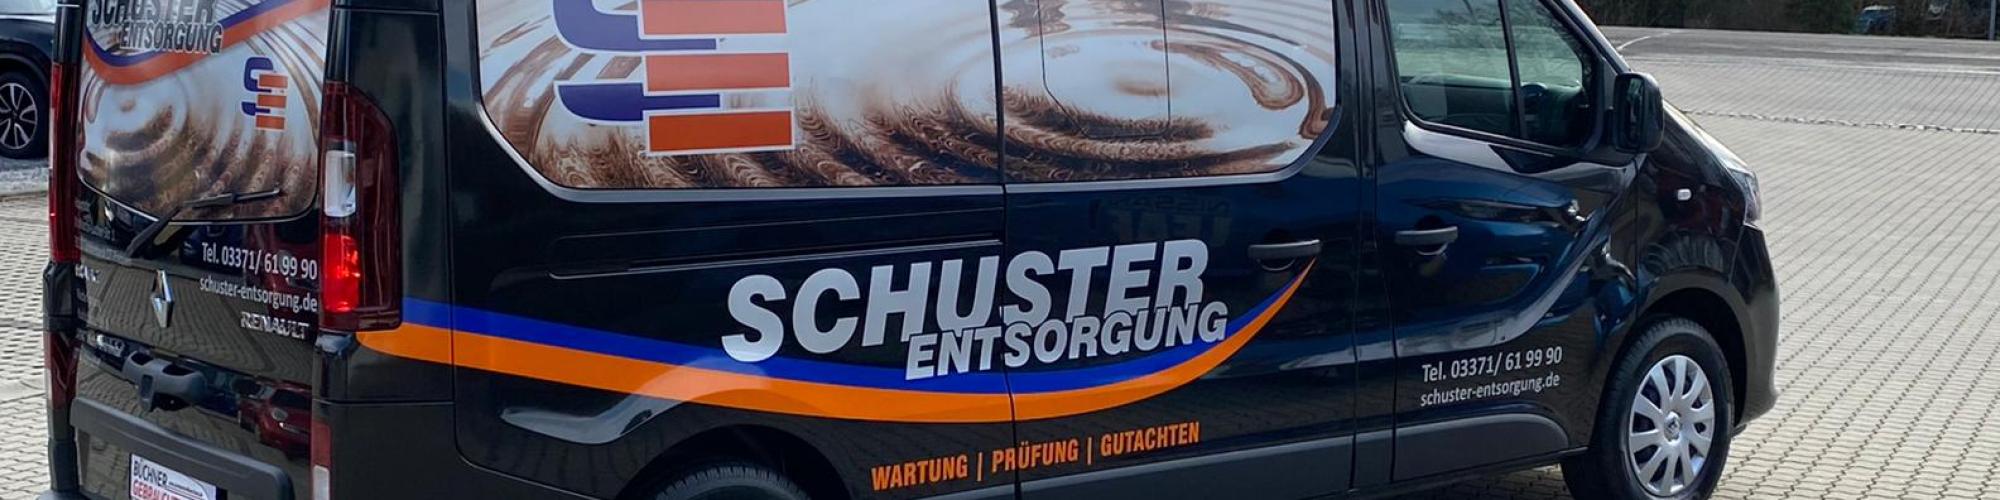 Schuster Entsorgung GmbH